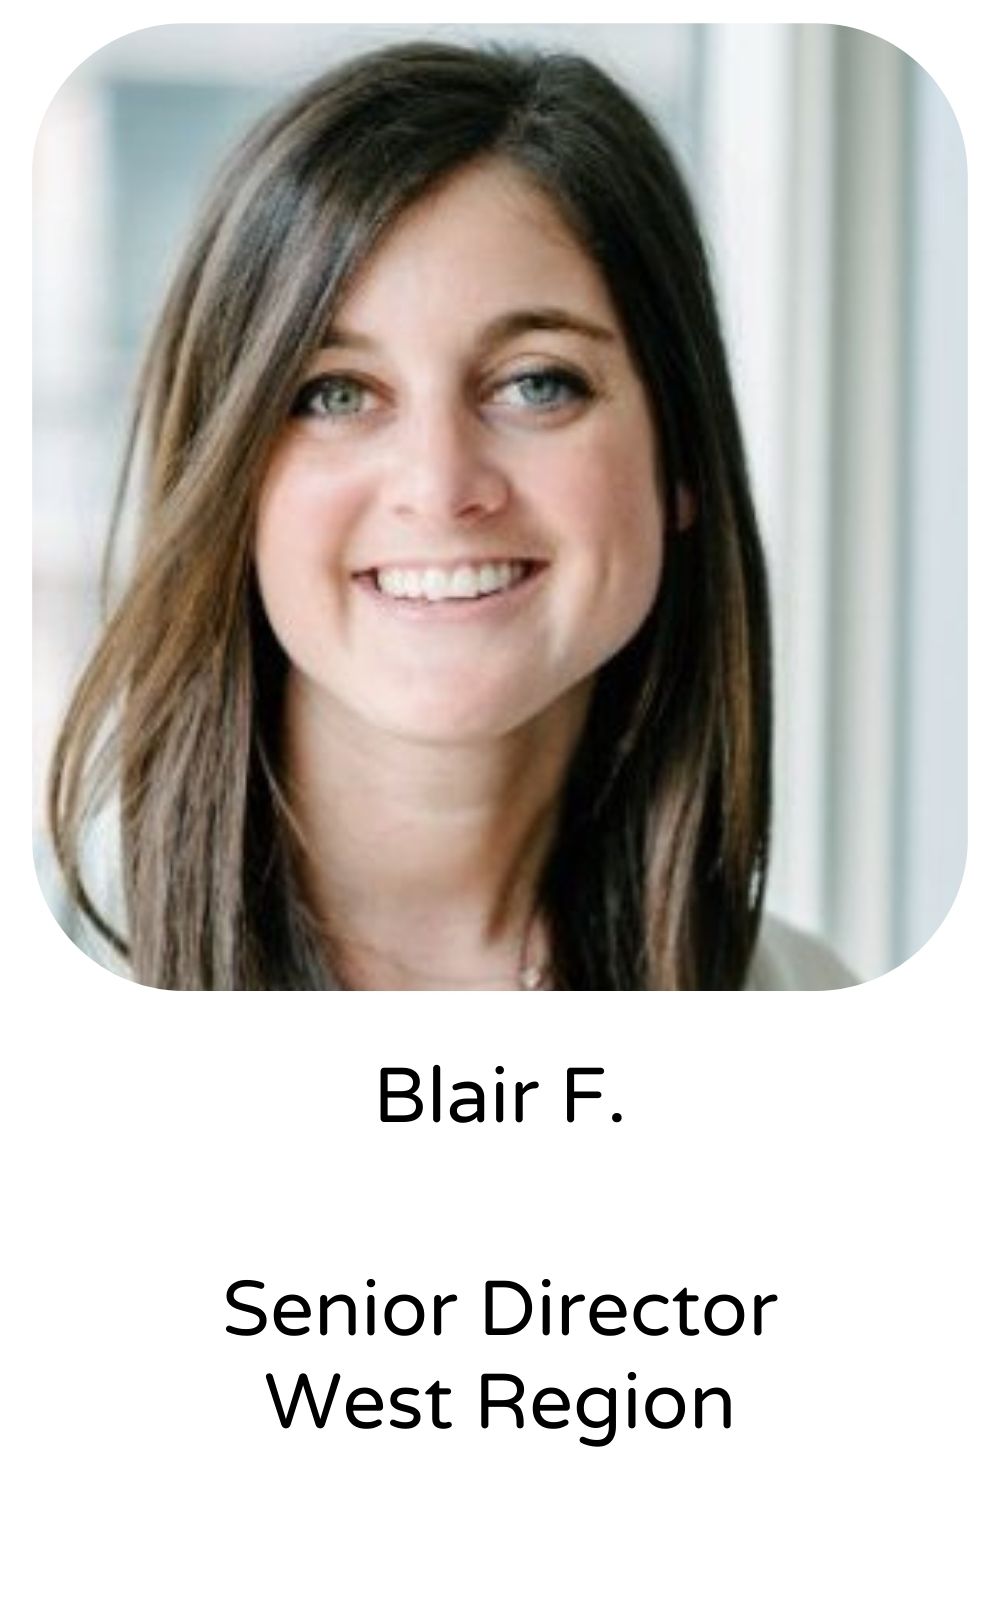 Blair F, Senior Director, West Region